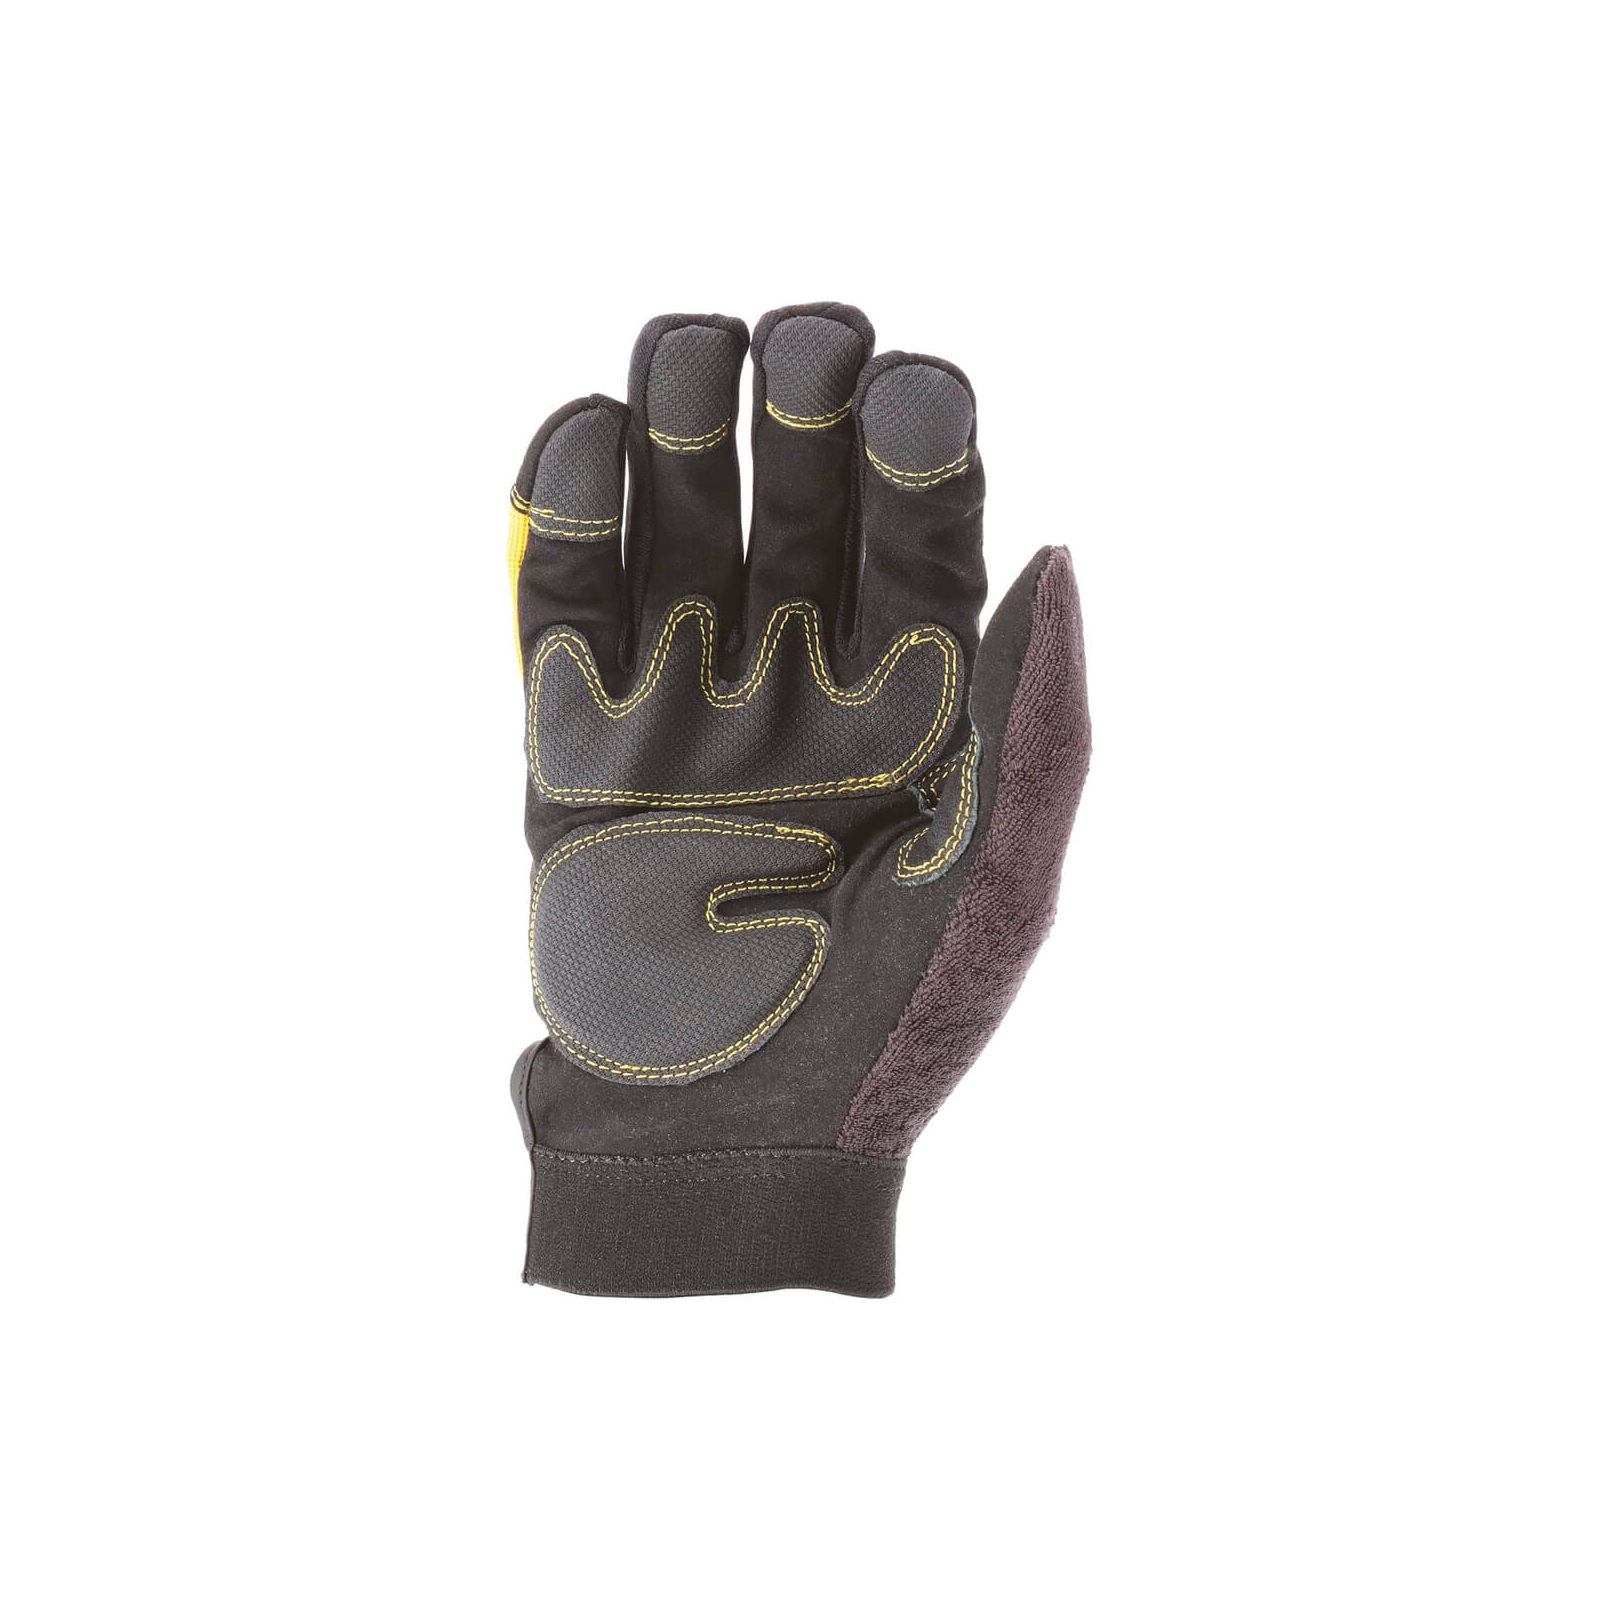 Захисні рукавиці DeWALT розм. L/9, з накладками на долоні та пальцях (DPG21L) зображення 5